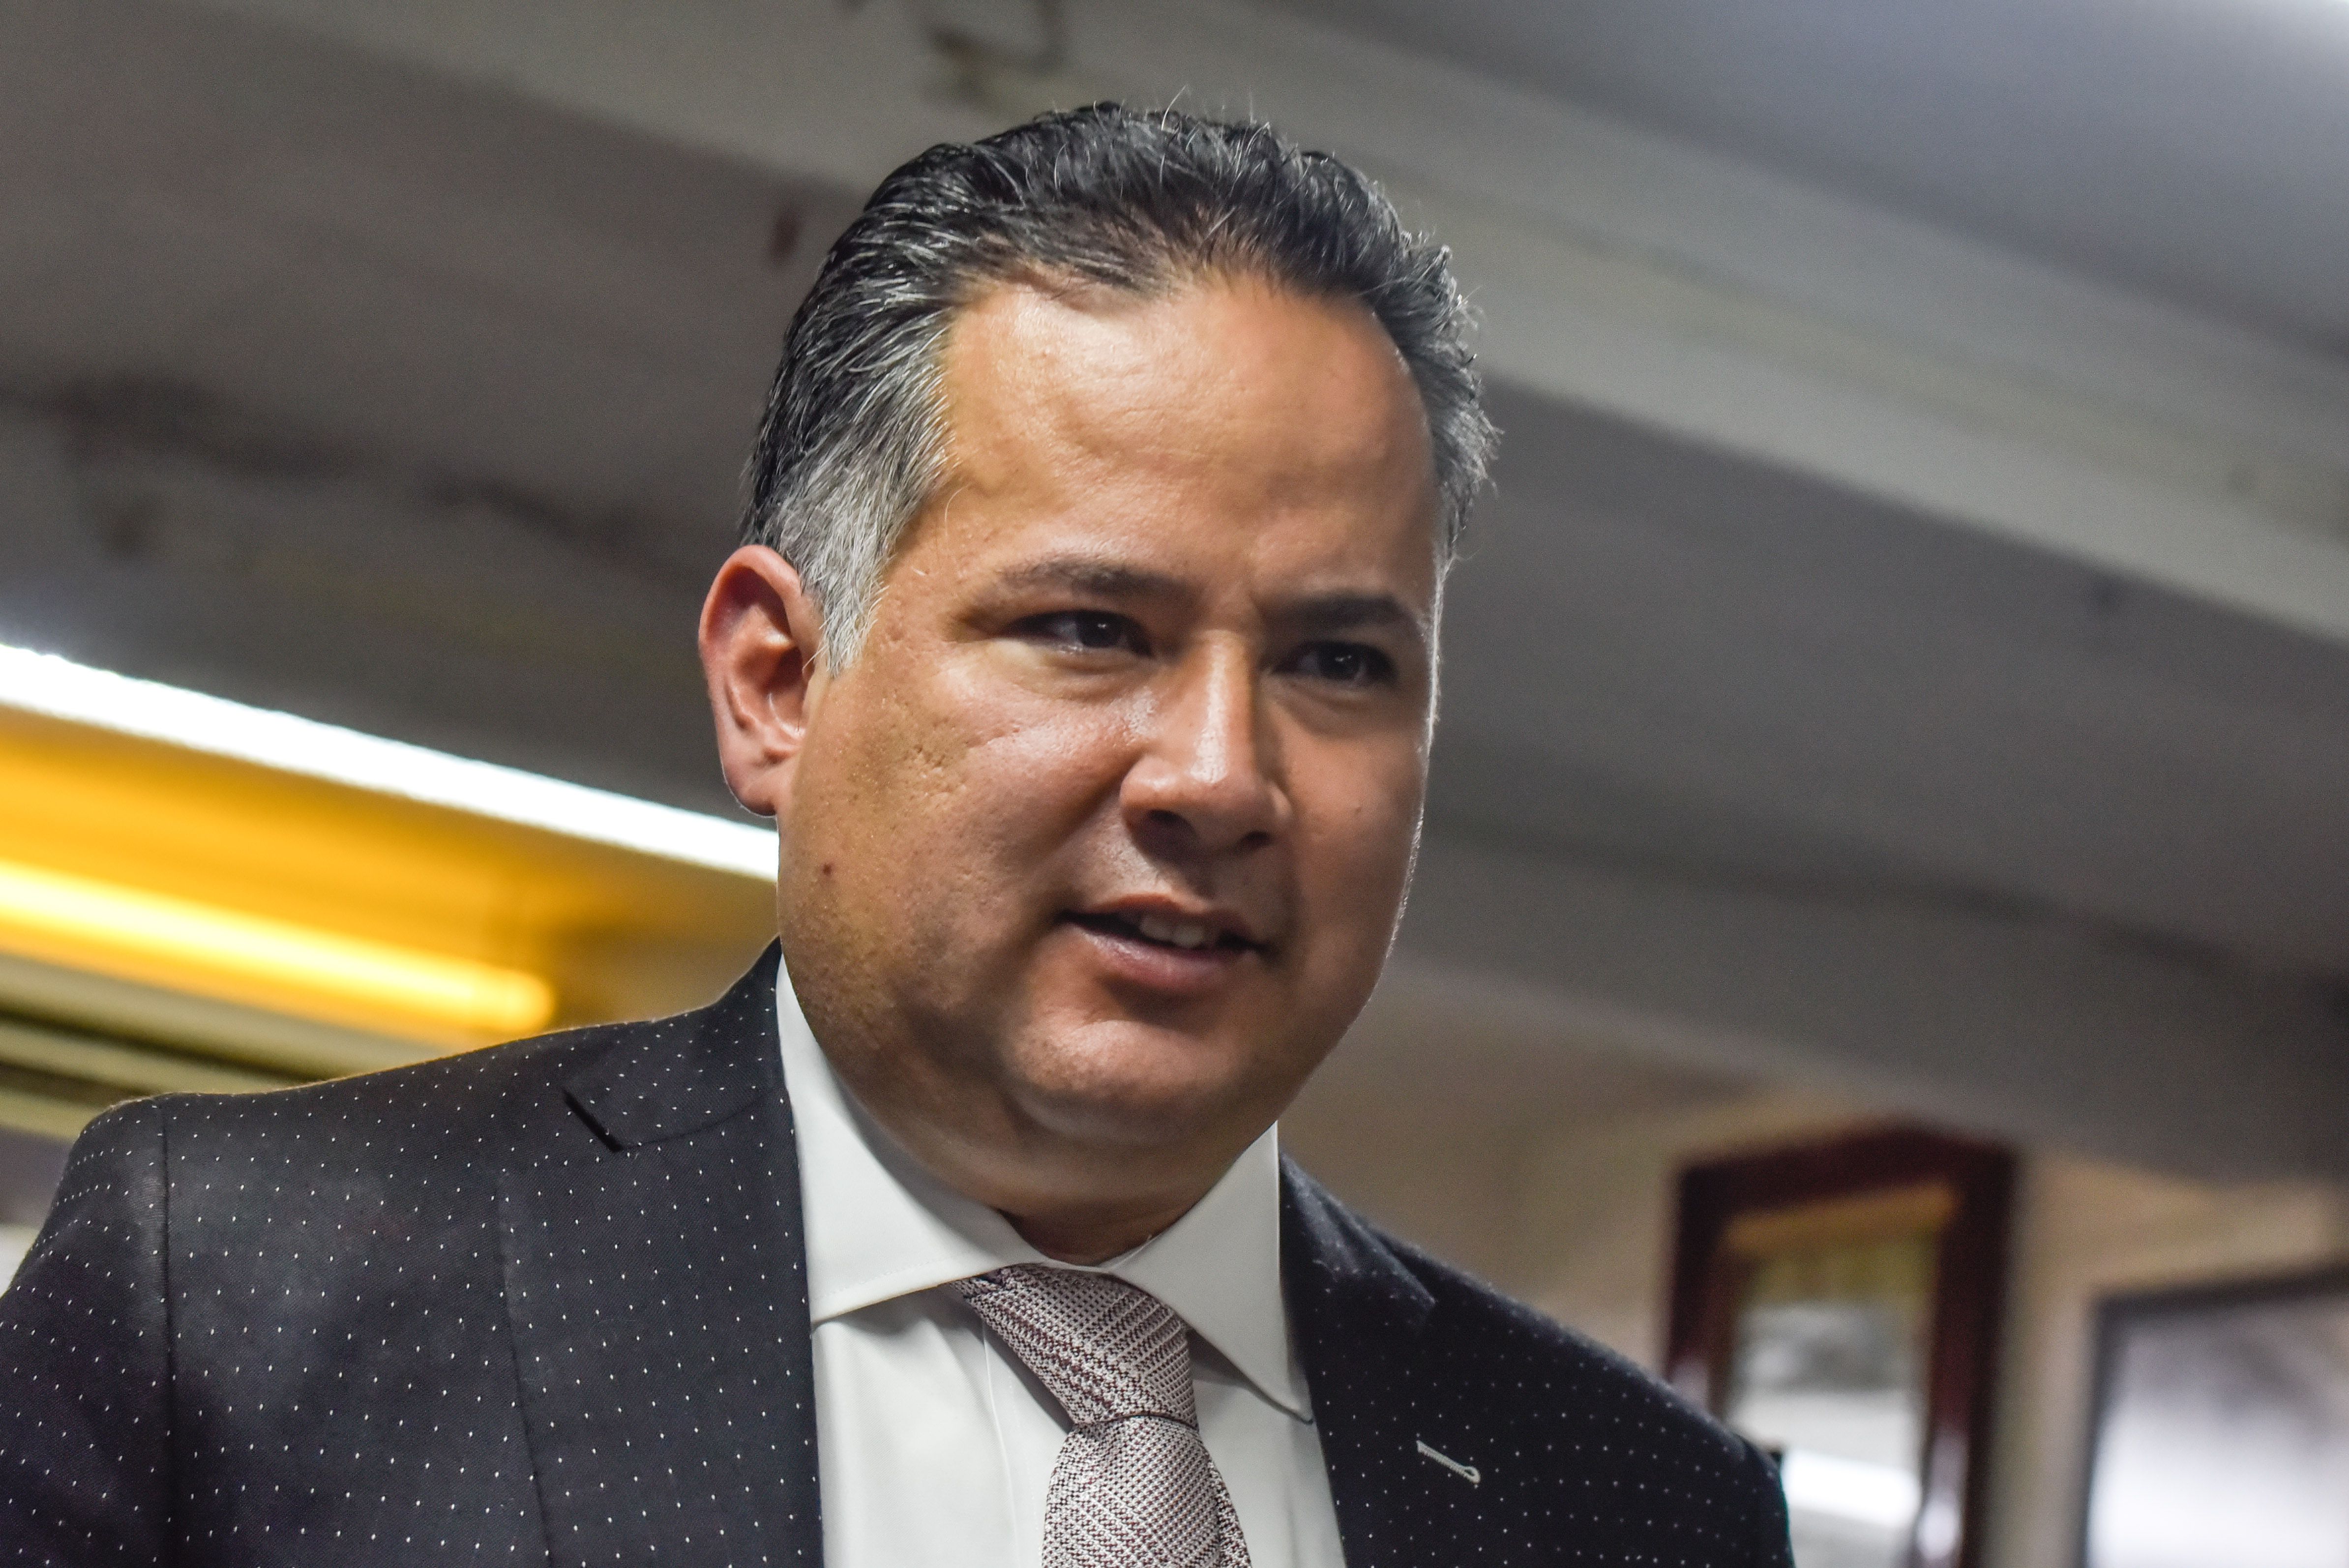 Santiago Nieto Castillo, titular de la Unidad de Inteligencia Financiera (UIF) de la Secretaría de Hacienda y Crédito Público (SHCP)
FOTO: MARIO JASSO /CUARTOSCURO.COM